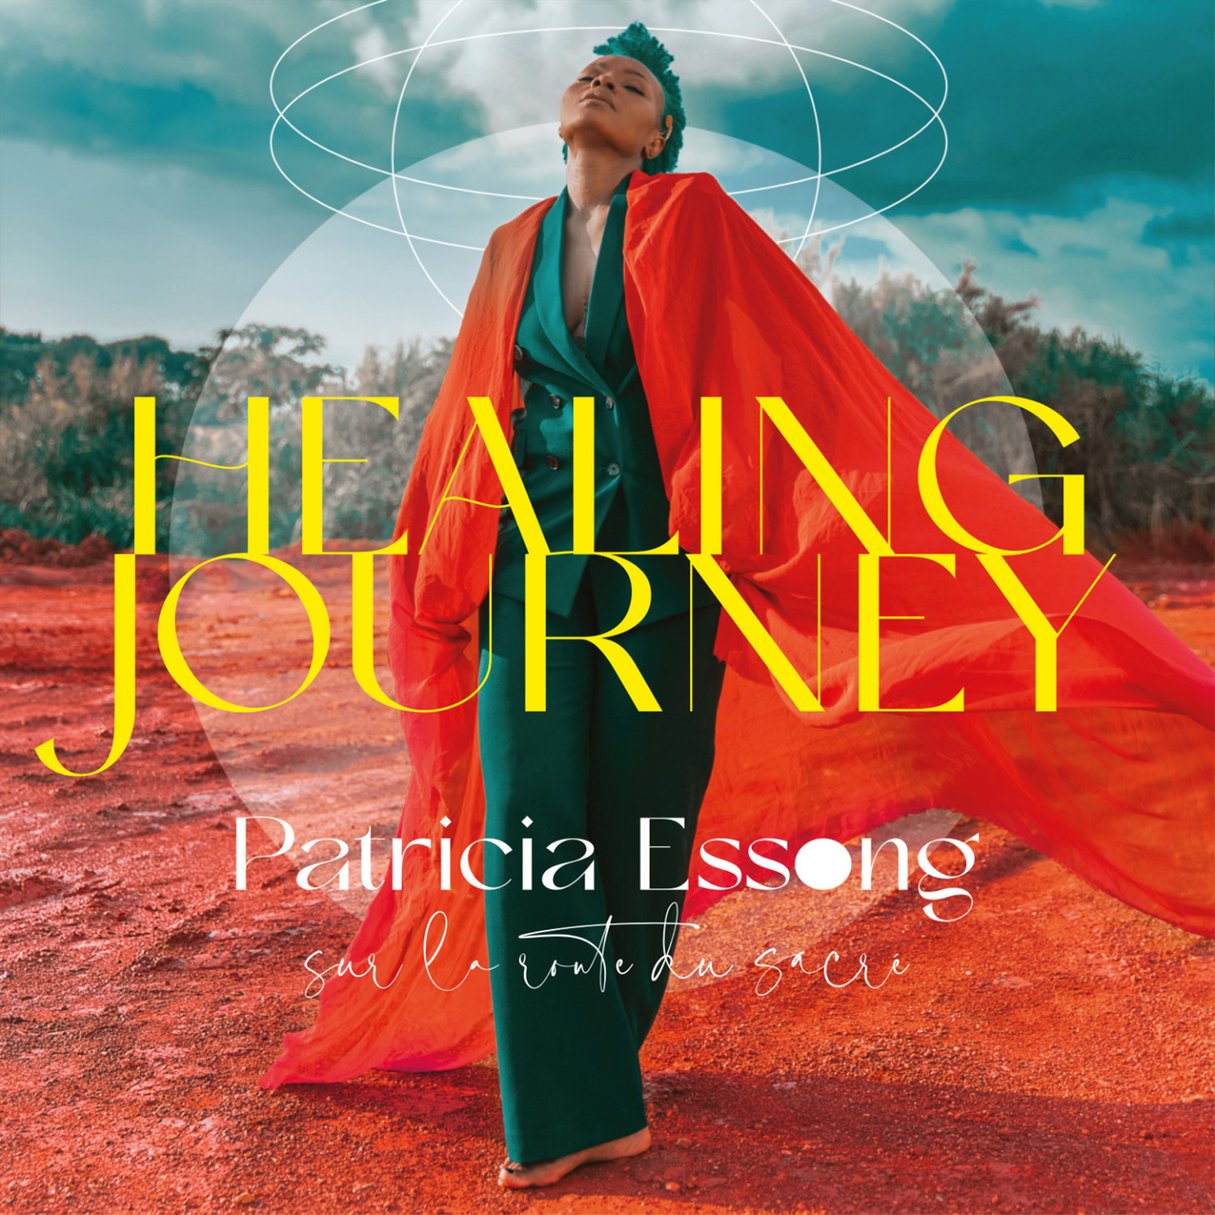 « Healing Journey », le dernier album de Patricia Essong.